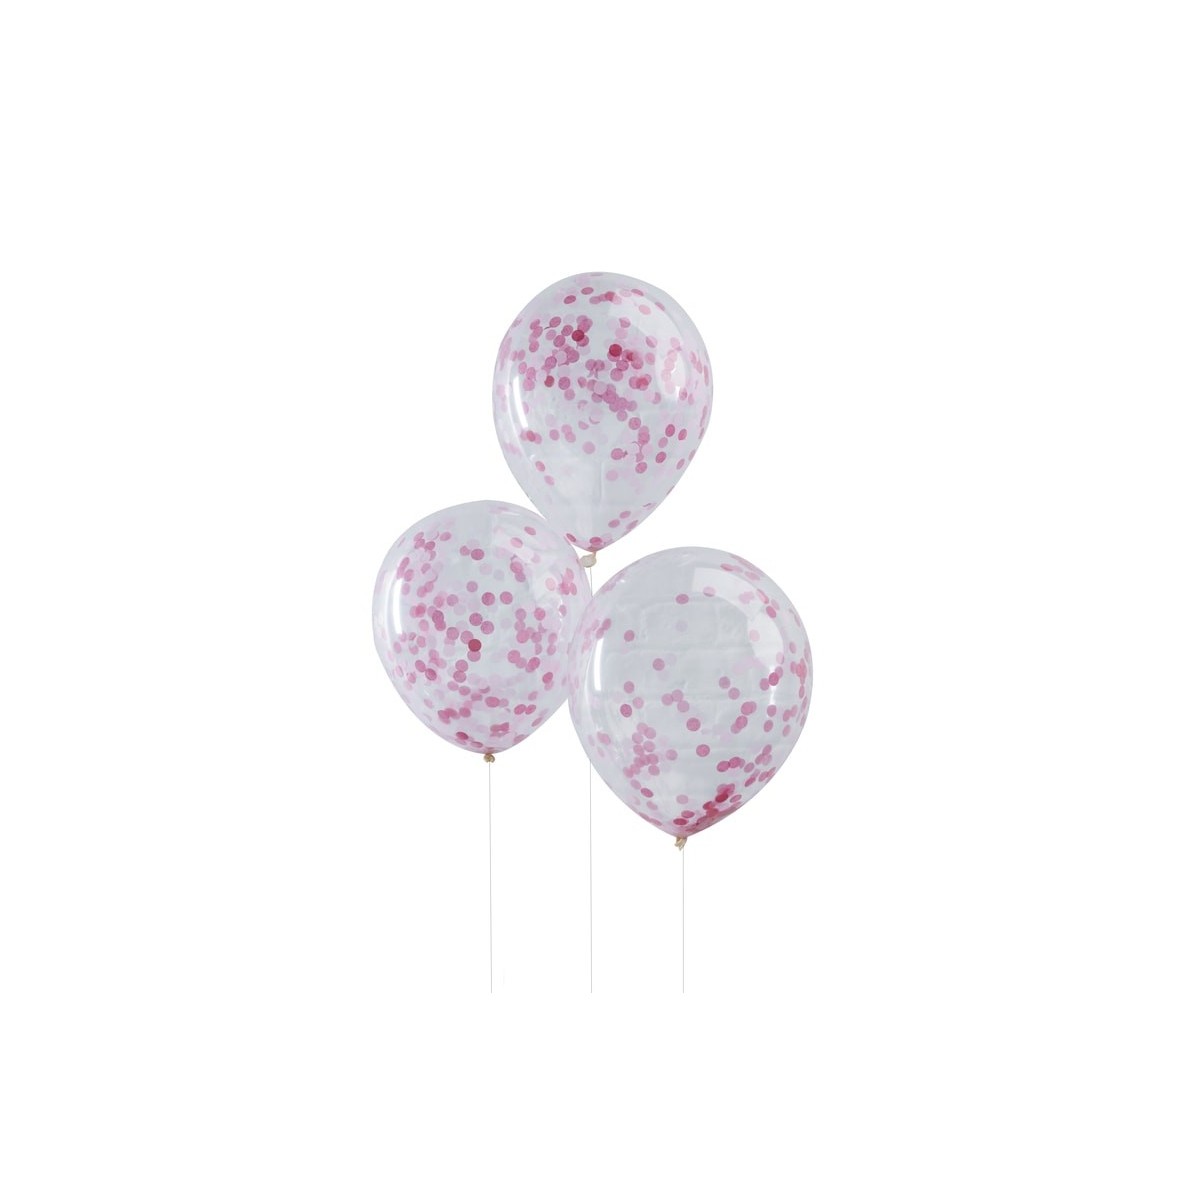 5 Ballons transparents confettis rose pâle